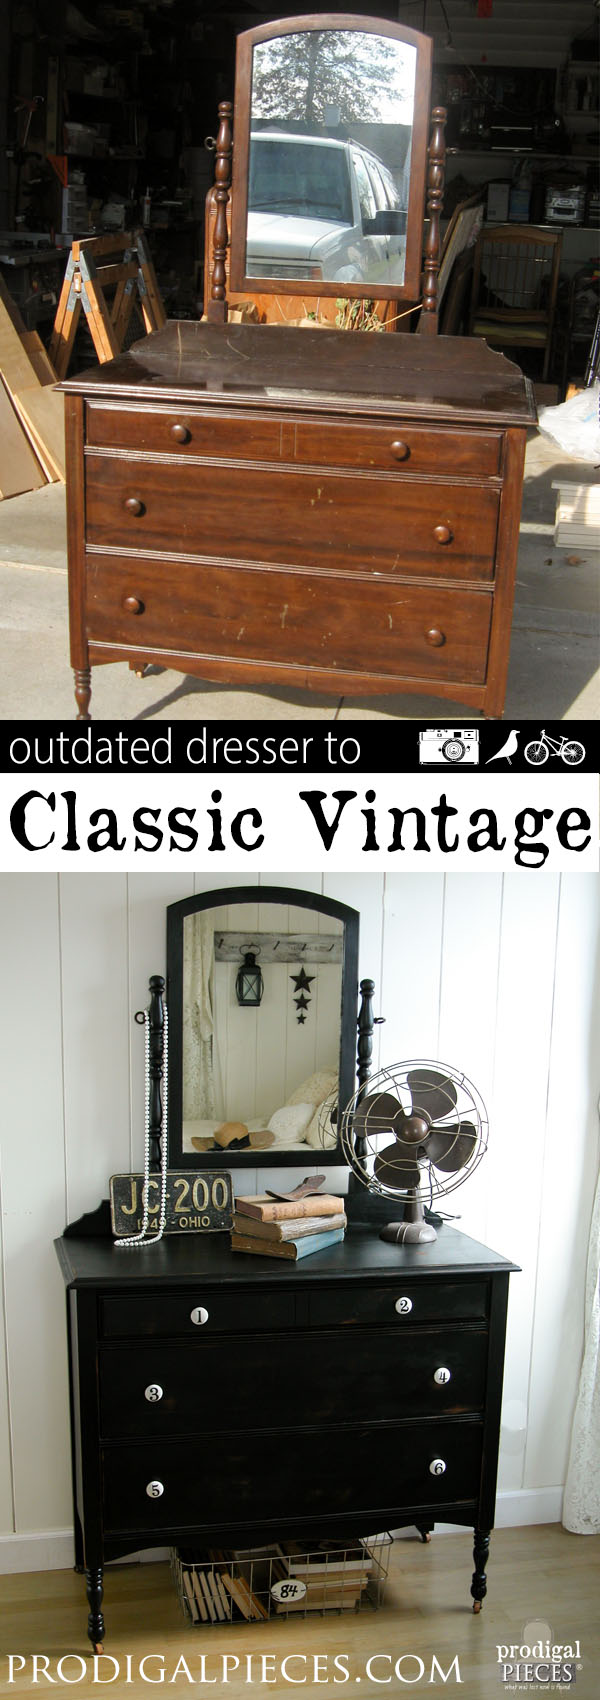 Classic Vintage Dresser Makeover | Prodigal Pieces | prodigalpieces.com